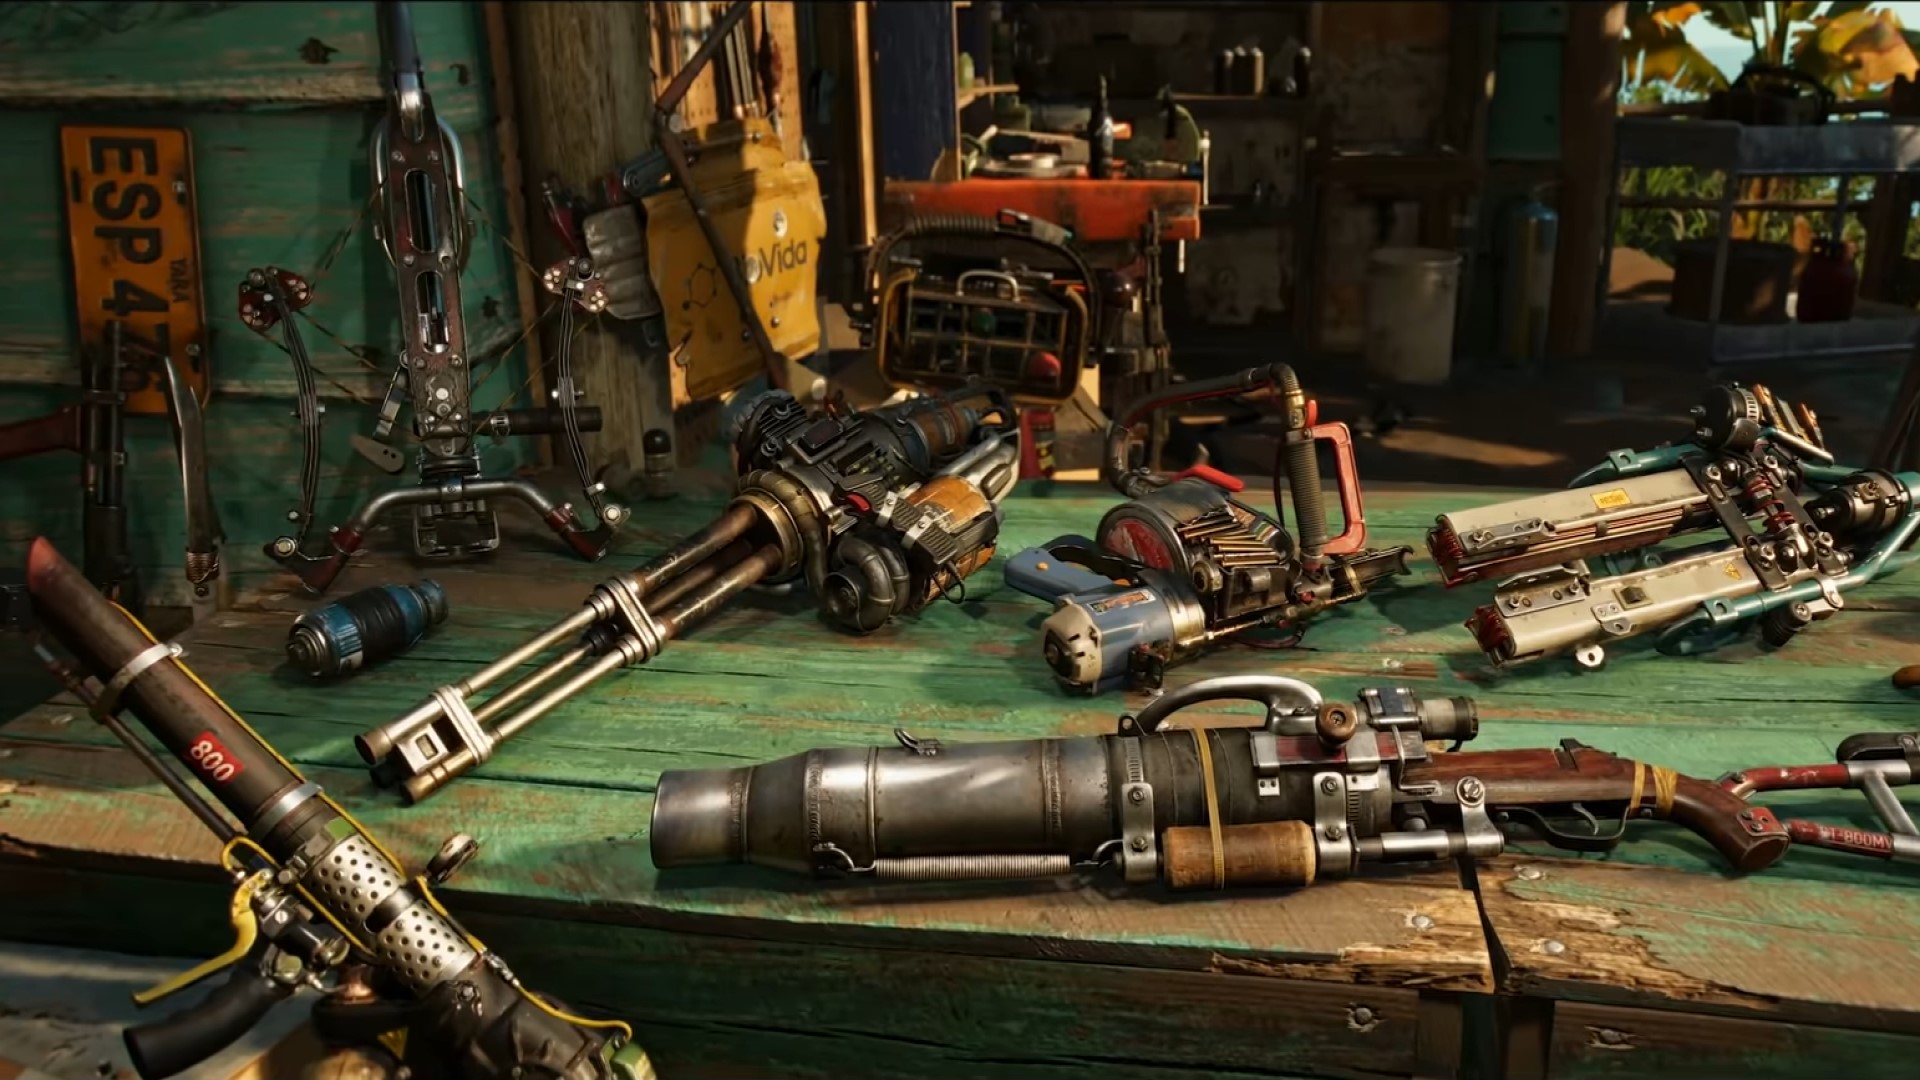 Гайд Far Cry 6 - полезные советы по прохождению игры: выбор тактики, лучшее оружие, амиго, ресурсы